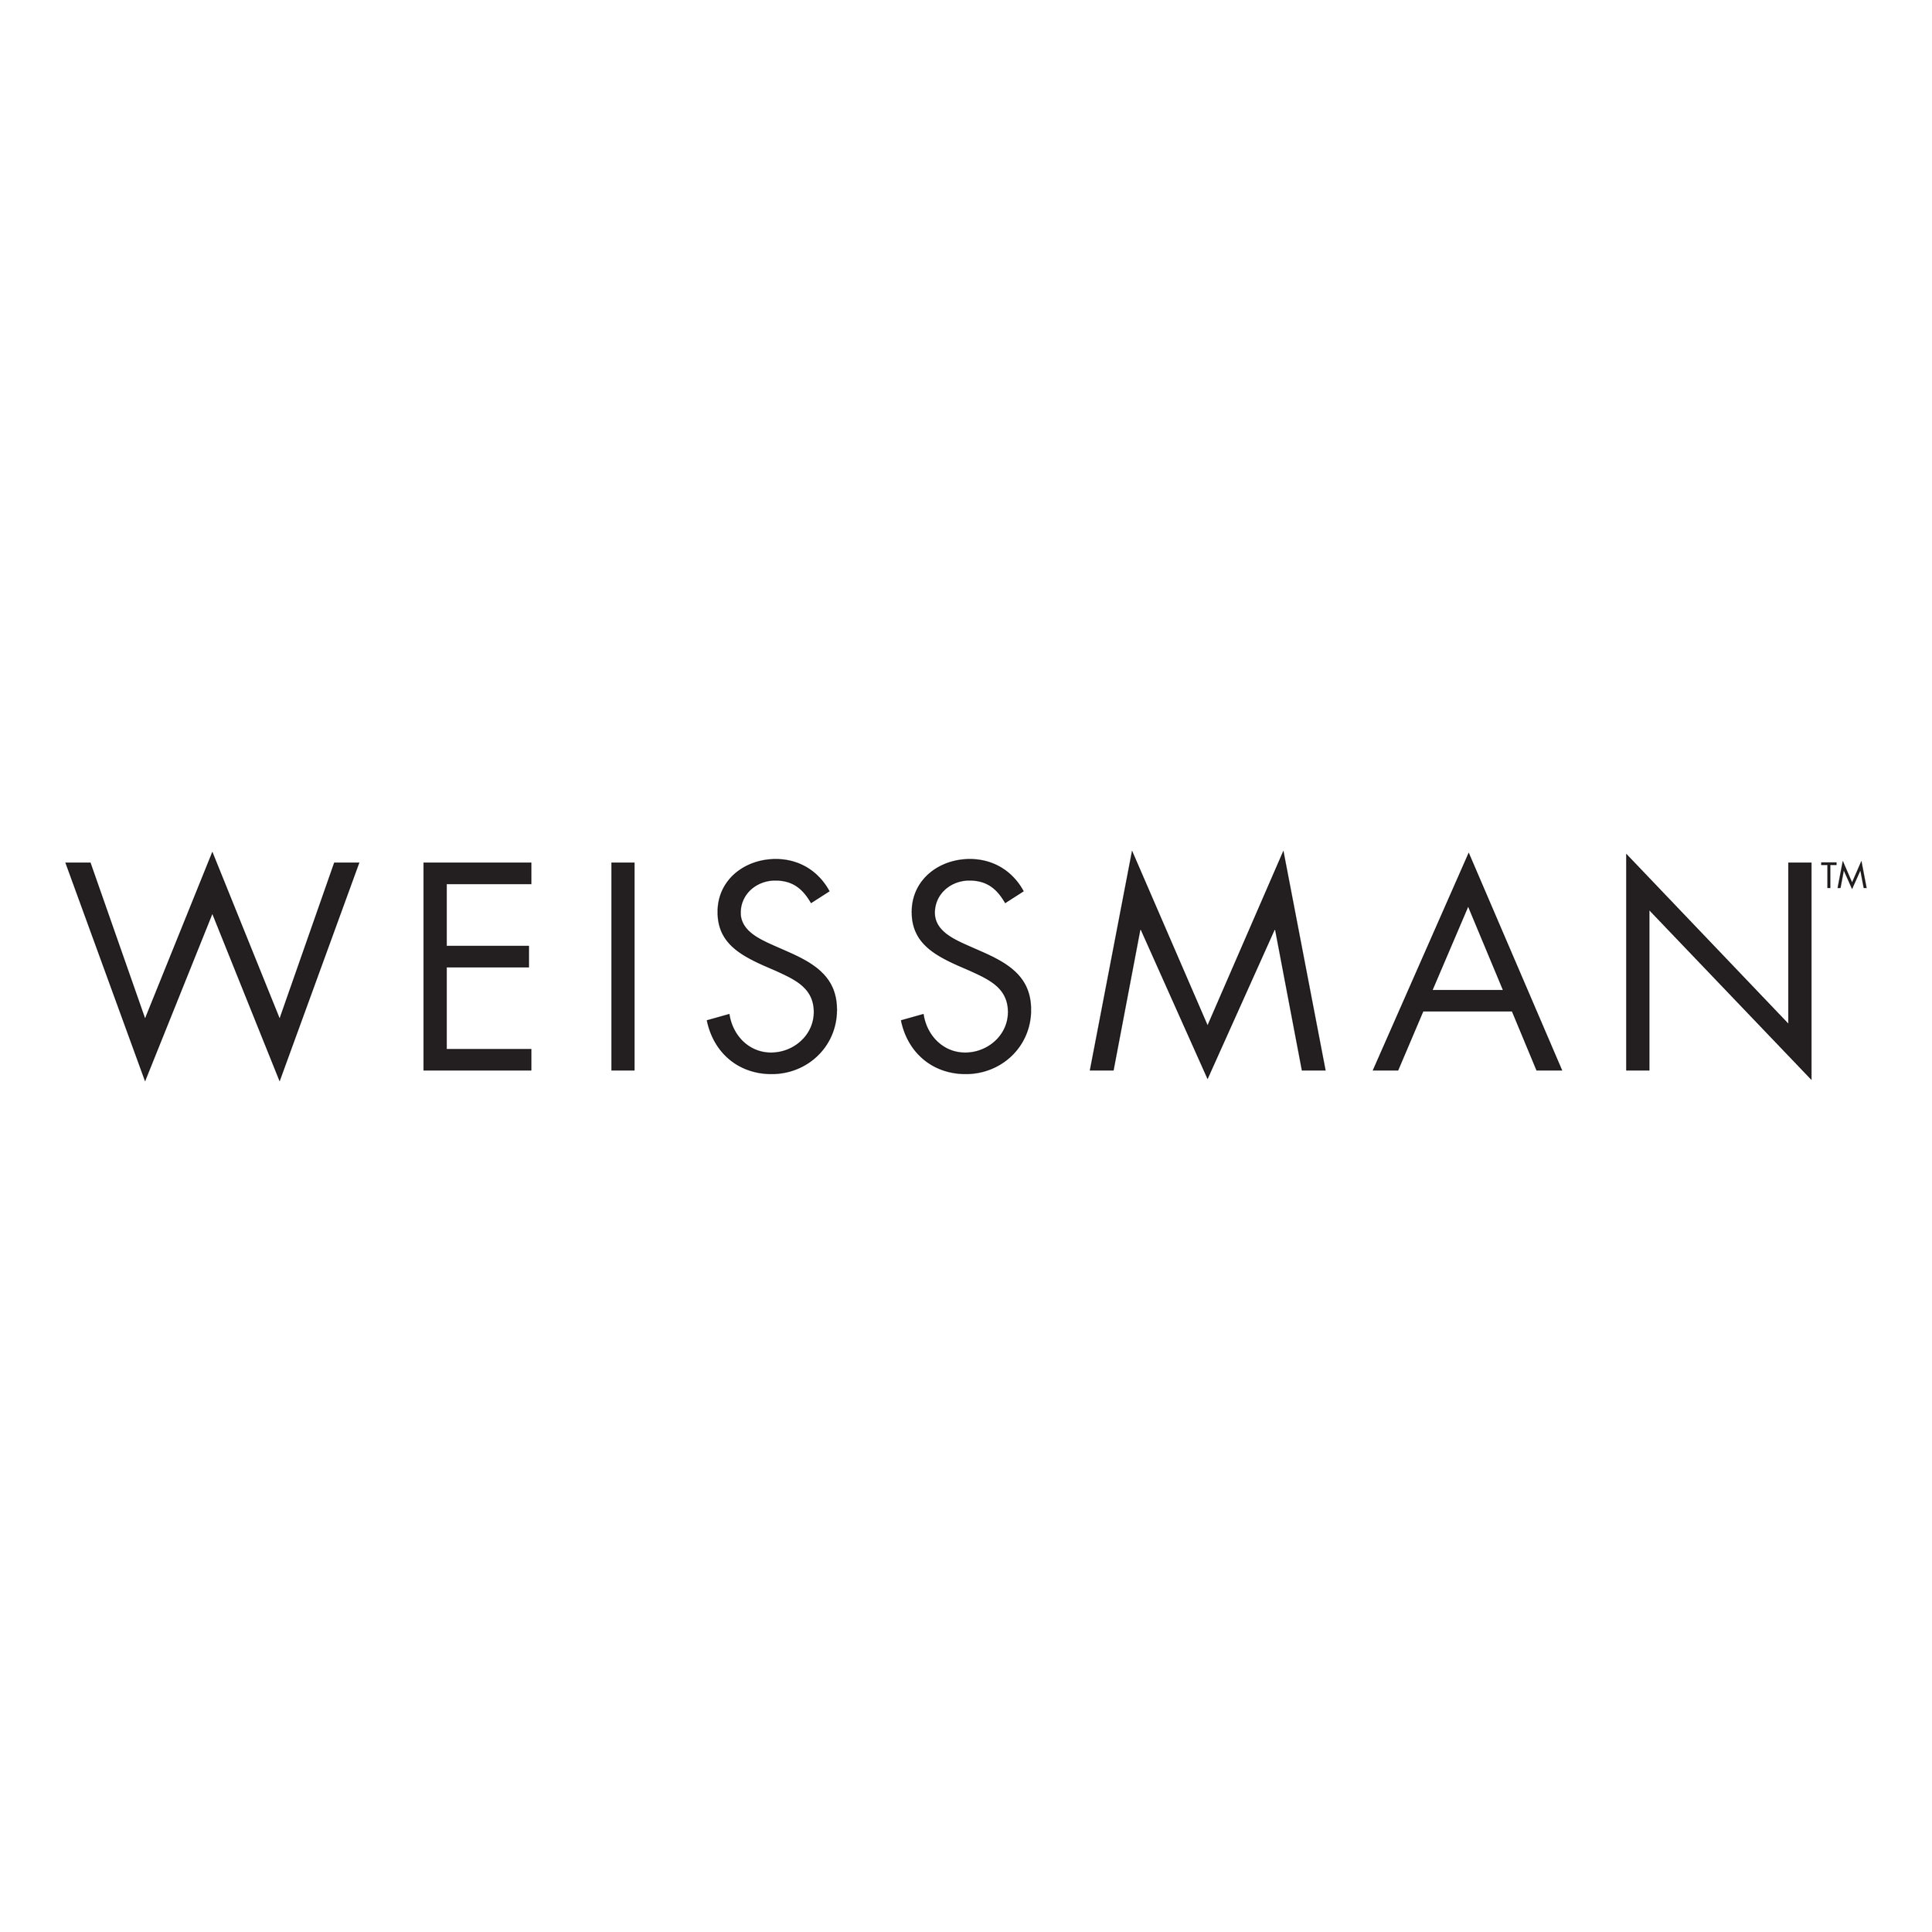 weissman-01.jpg